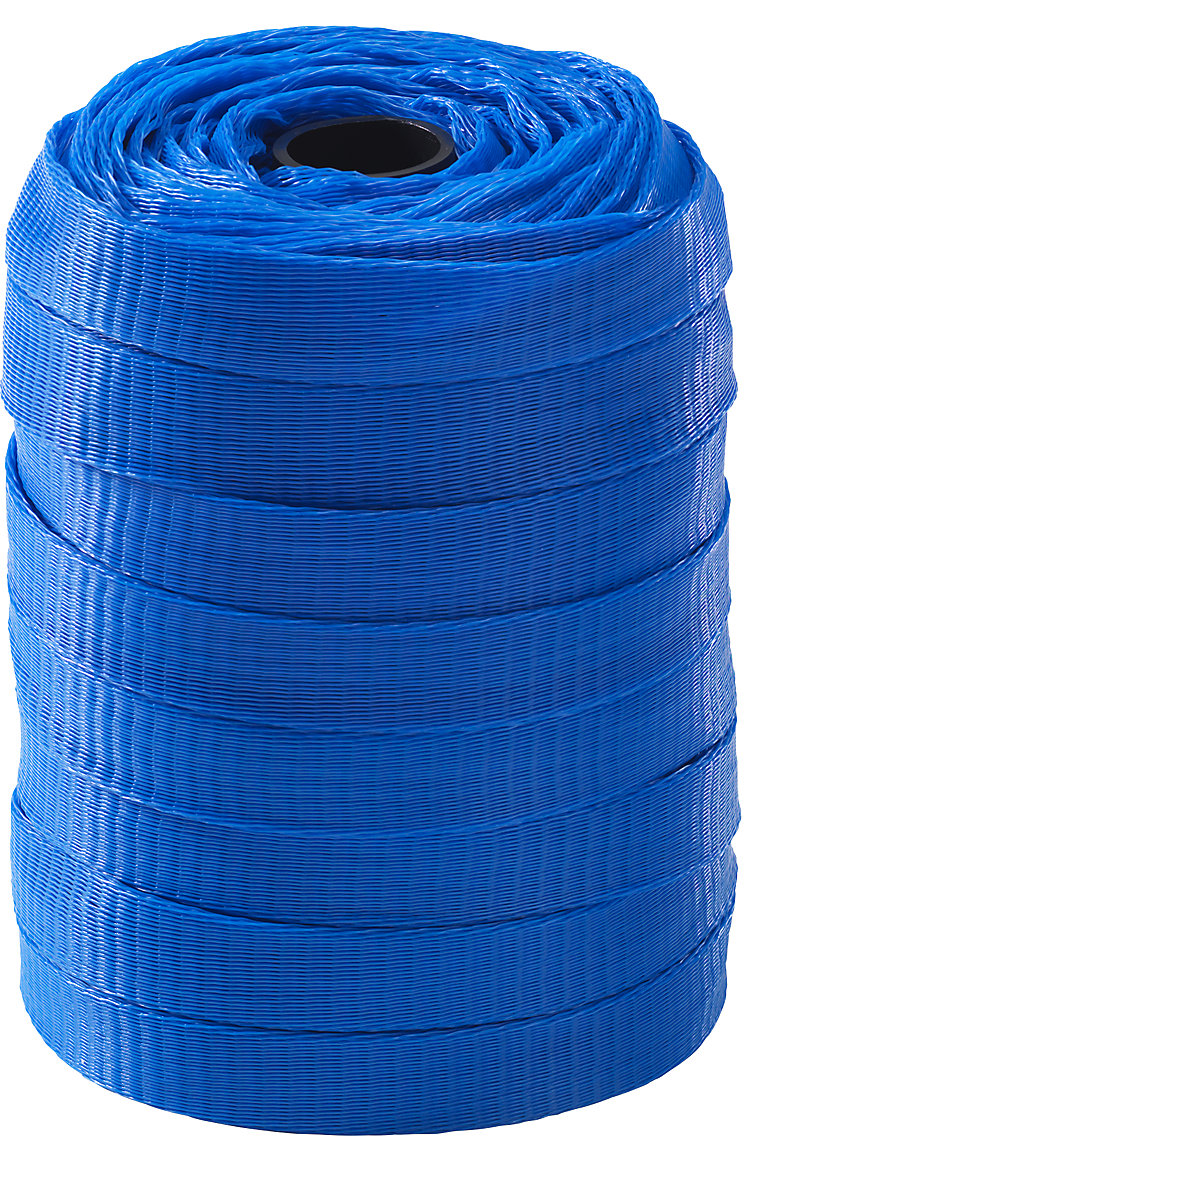 Materiaalbeschermingsnet, polyethyleen, 1 rol, blauw, voor Ø 80 – 120 mm-7